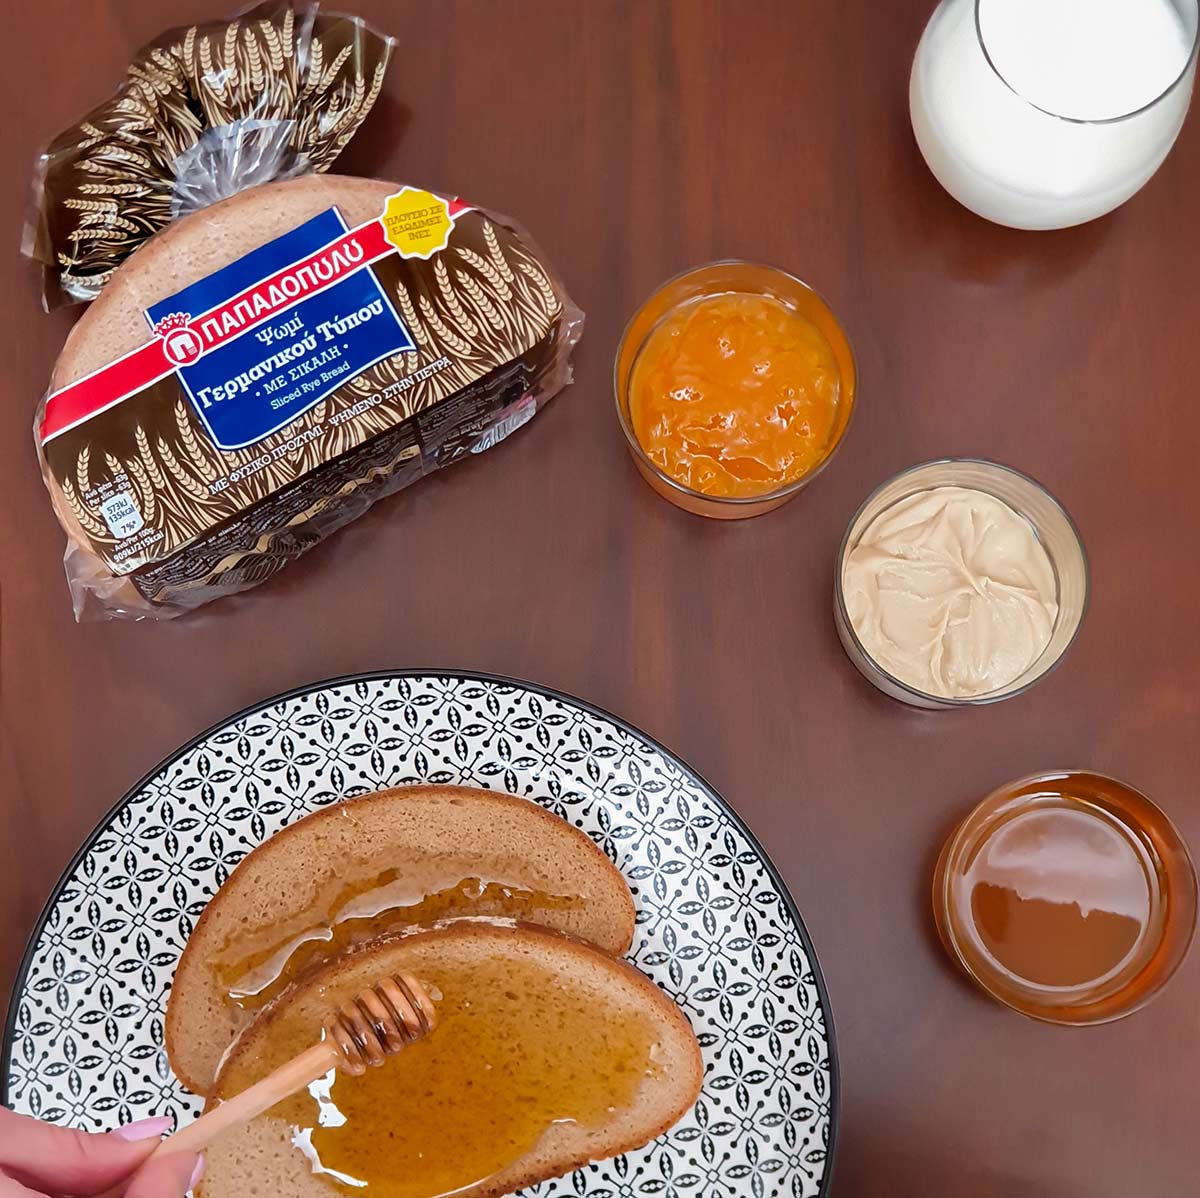  Image for Γευστικό πρωινό με ψωμί Παπαδοπούλου Γερμανικού Τύπου με Σίκαλη!